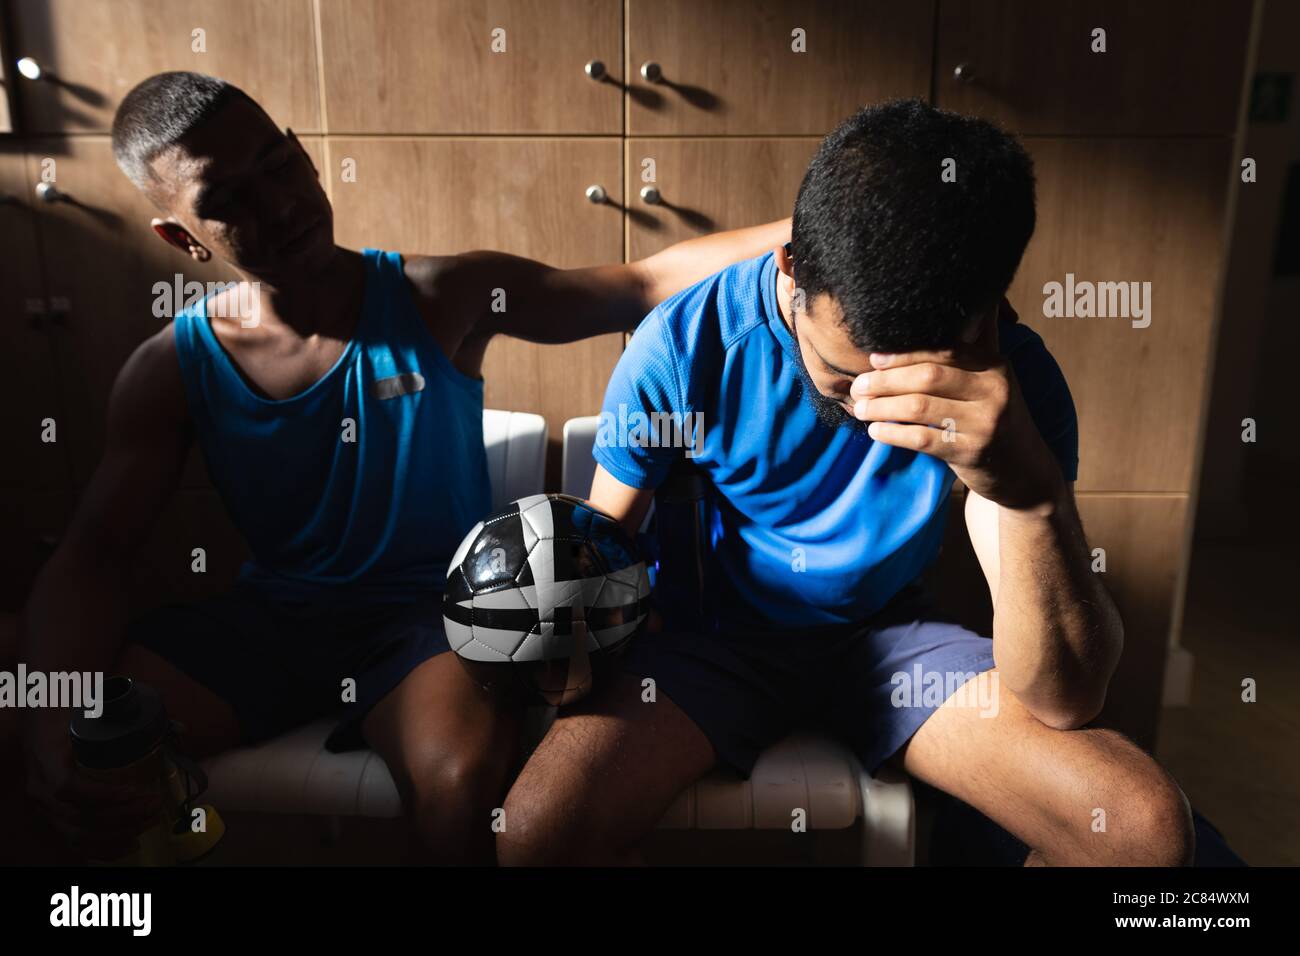 Deux joueurs de football de race mixte, hommes, portant des vêtements de sport assis dans le vestiaire pendant une pause dans le jeu, tenant le ballon de repos étant déçu. Banque D'Images